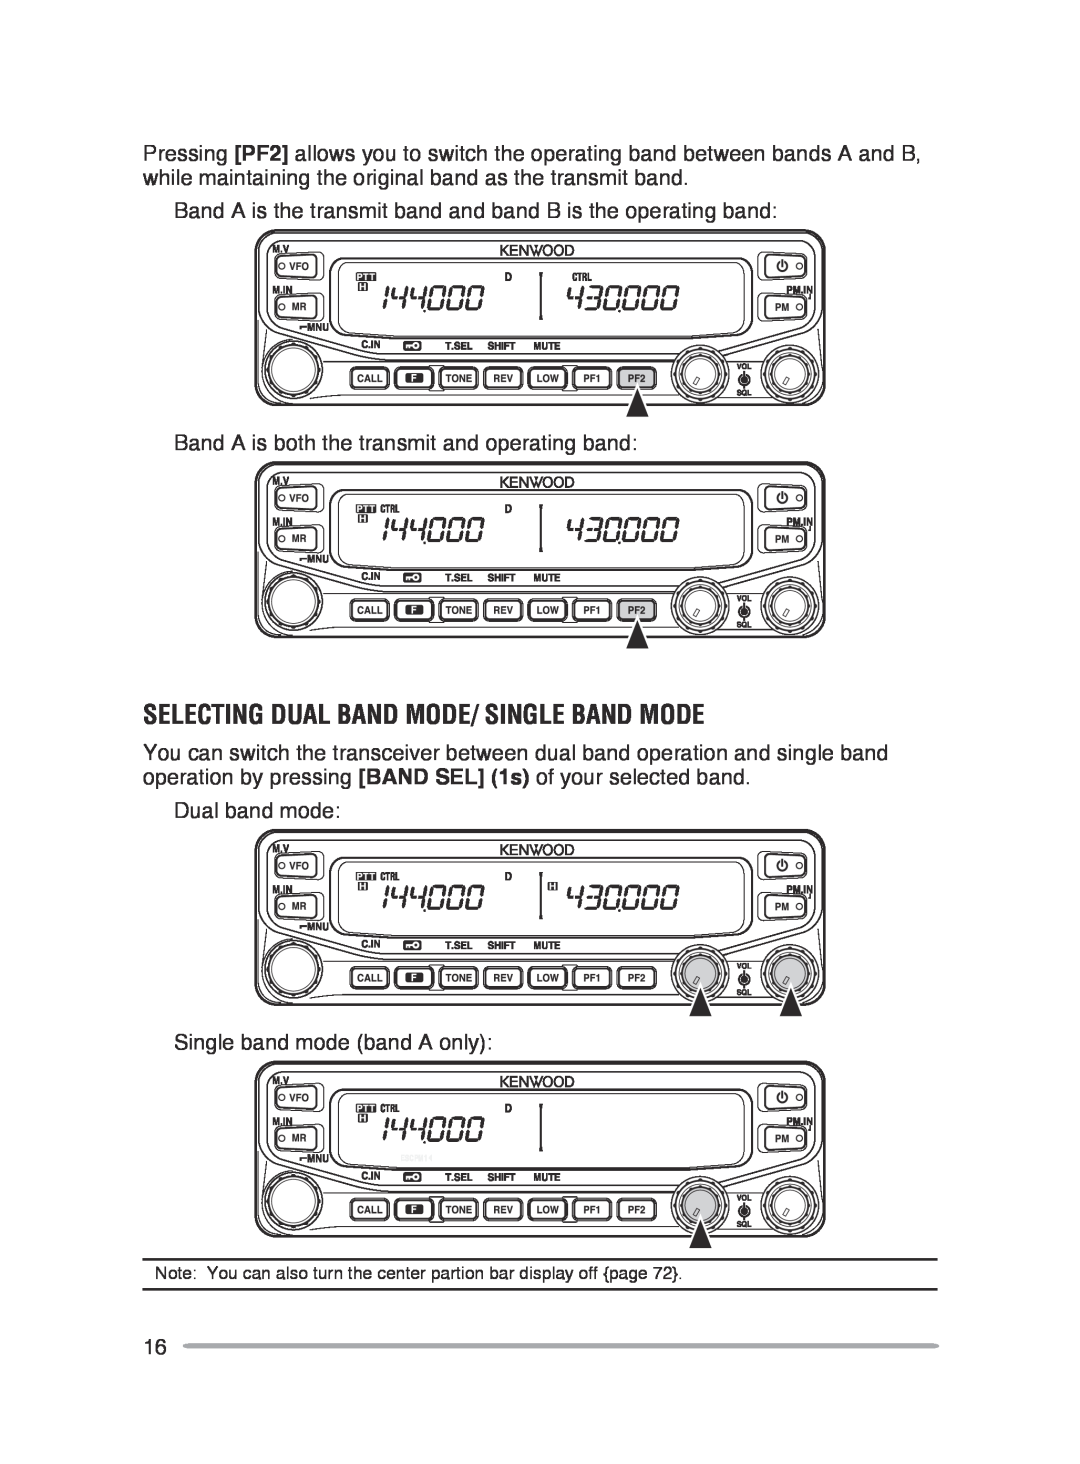 Kenwood TM-V71E, TM-V71A instruction manual SELECTING Dual band mode/ single band MODE 